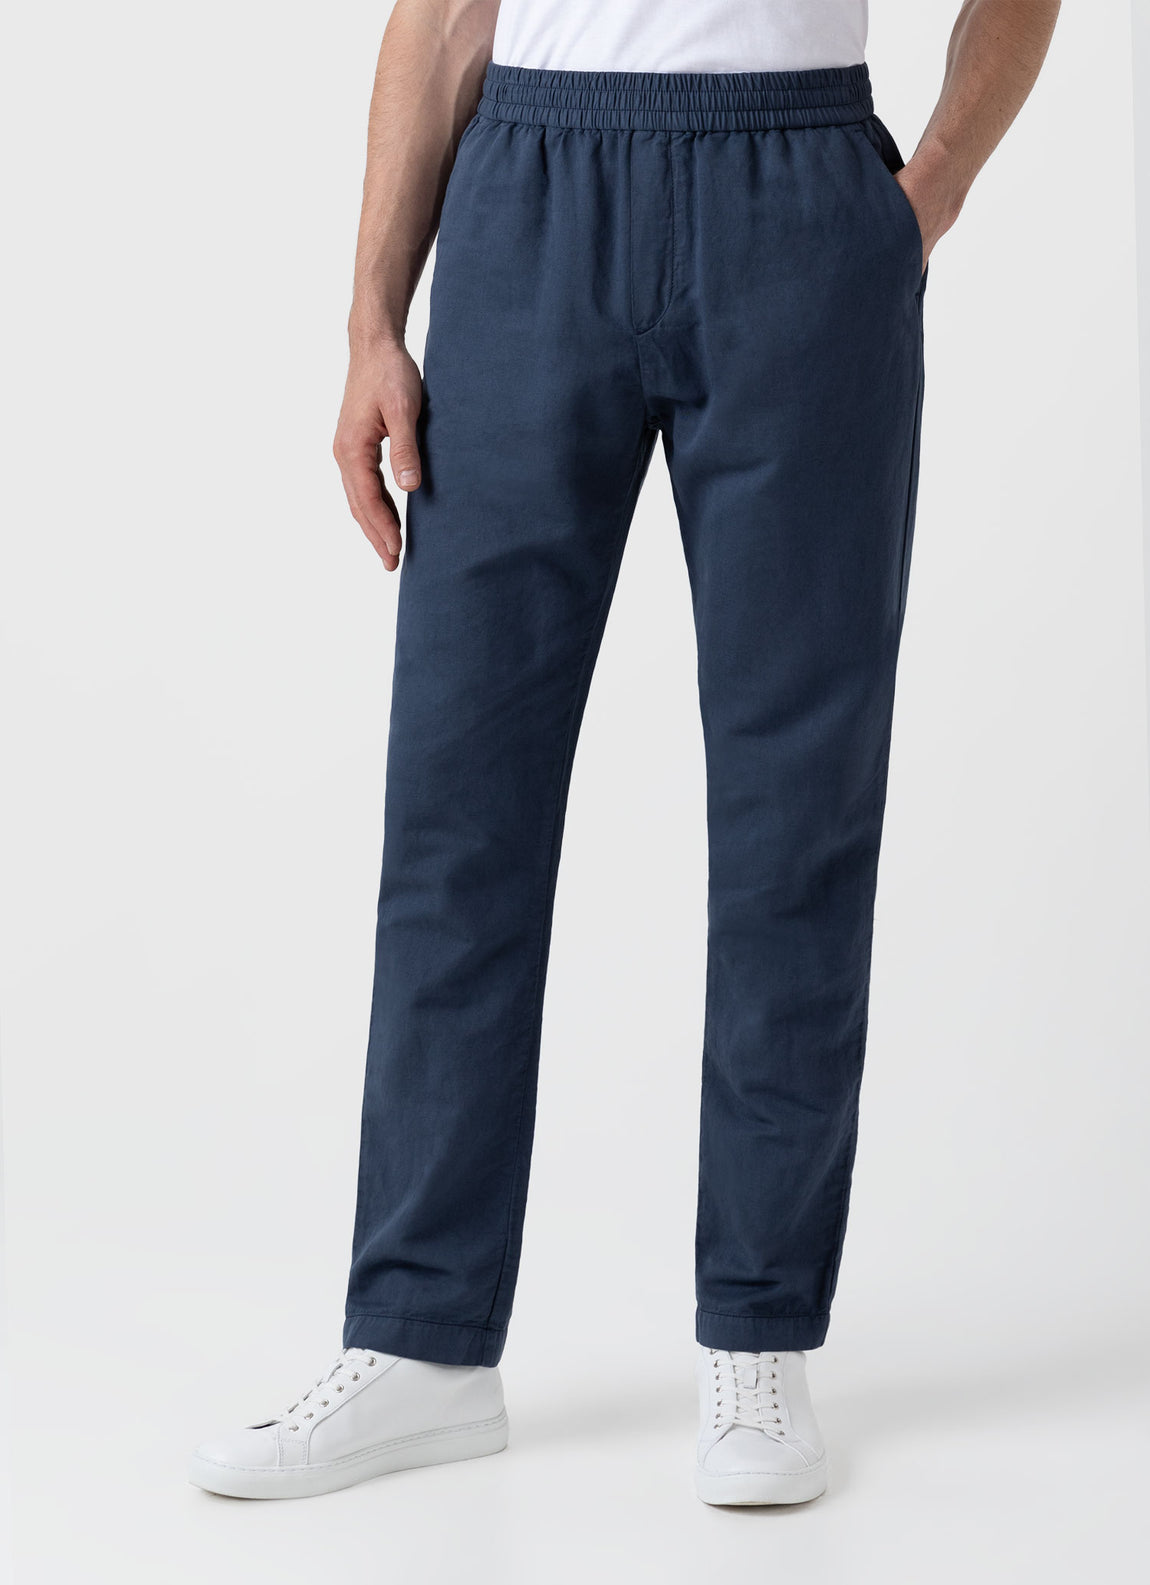 Men's Cotton Linen Drawstring Trouser in Shale Blue | Sunspel